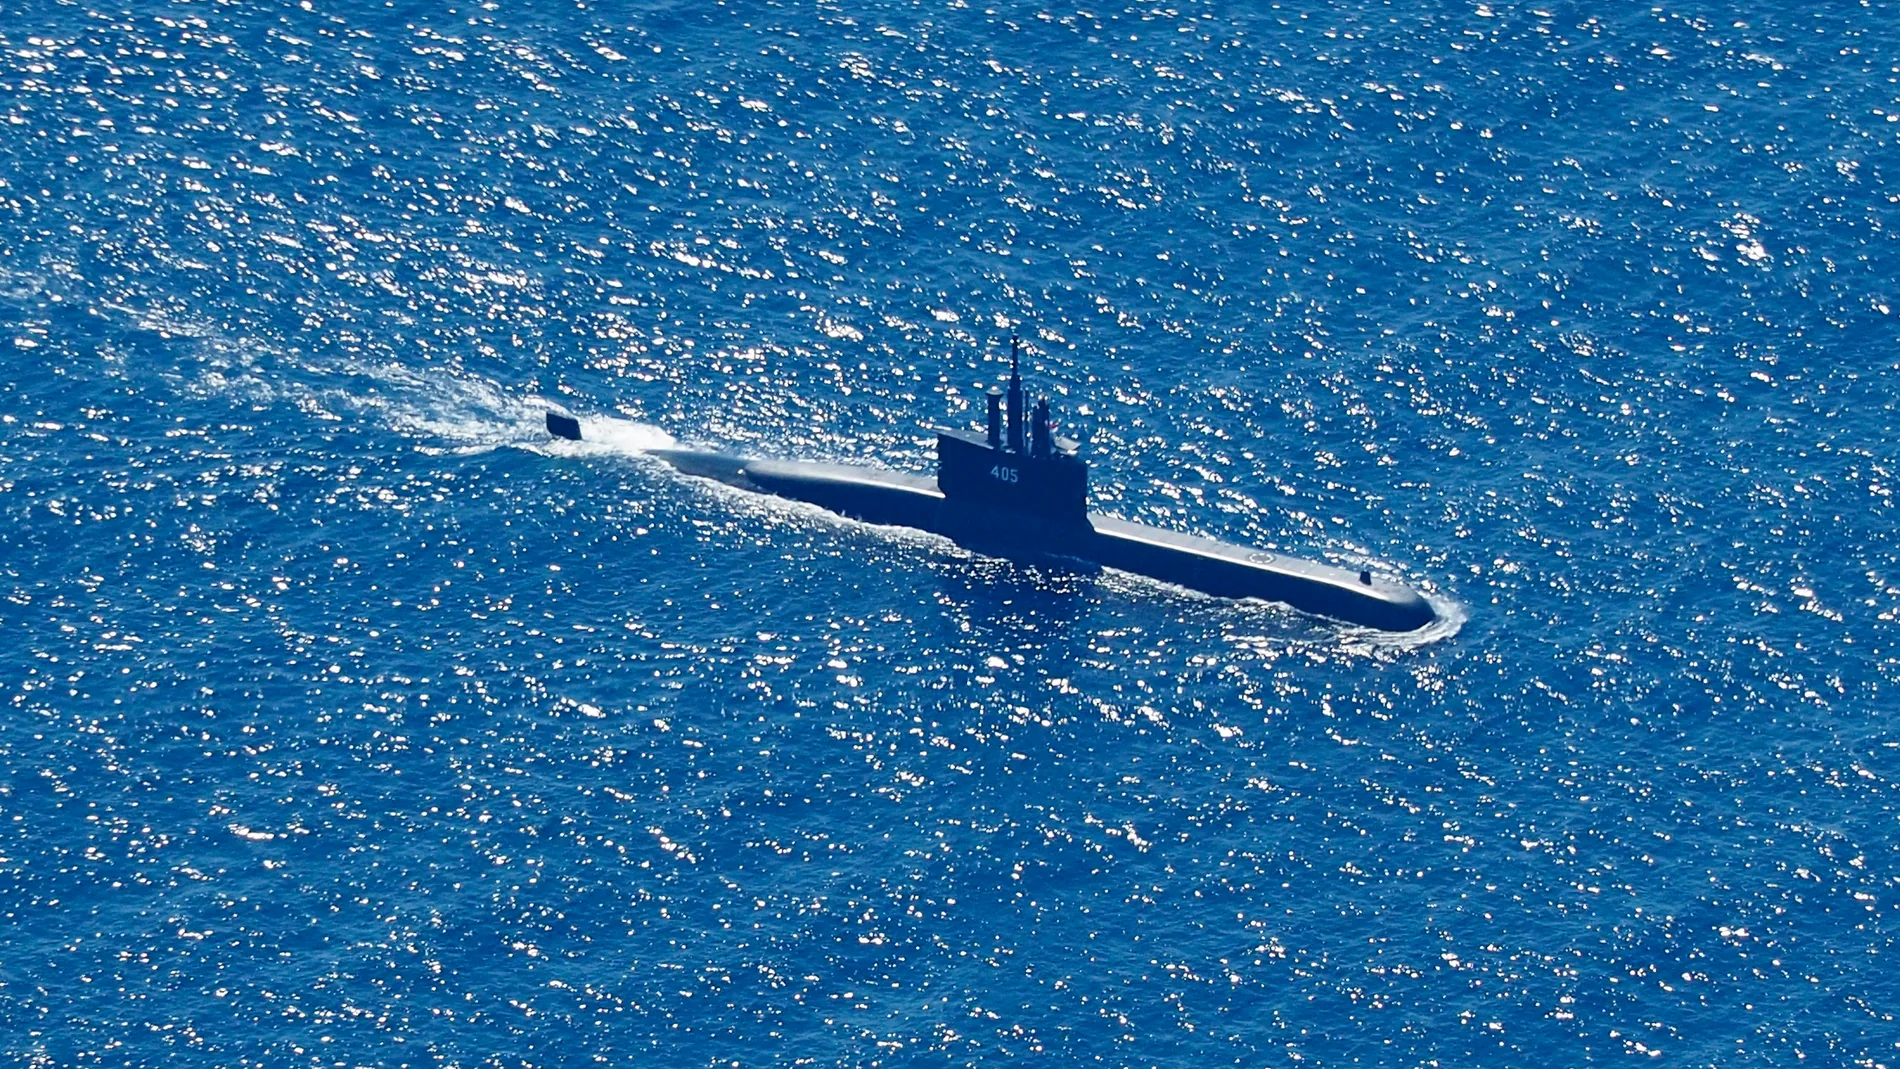 Fotografía aérea muestra al submarino de la Armada de Indonesia KRI Alugoro buscando al KRI Nanggala desaparecido